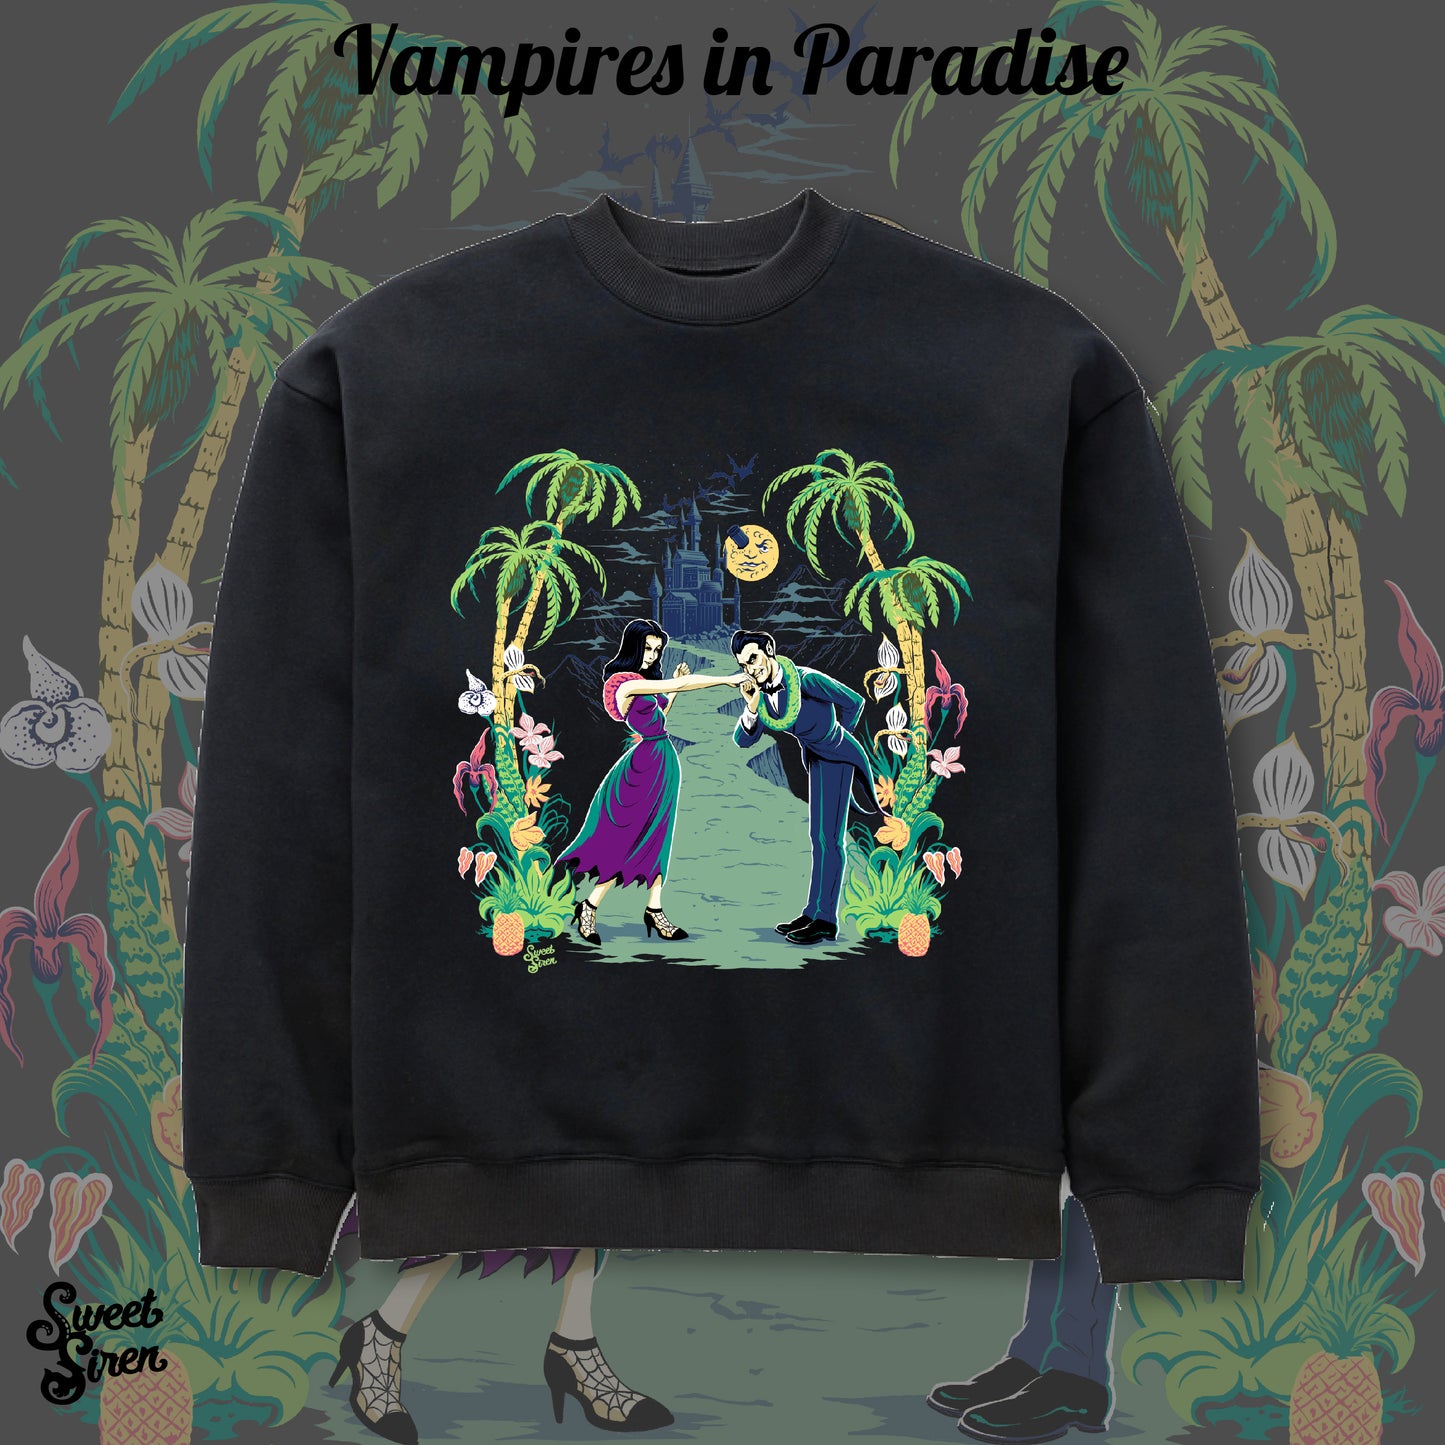 Vampires in Paradise  - Unisex Crewneck Sweatshirt